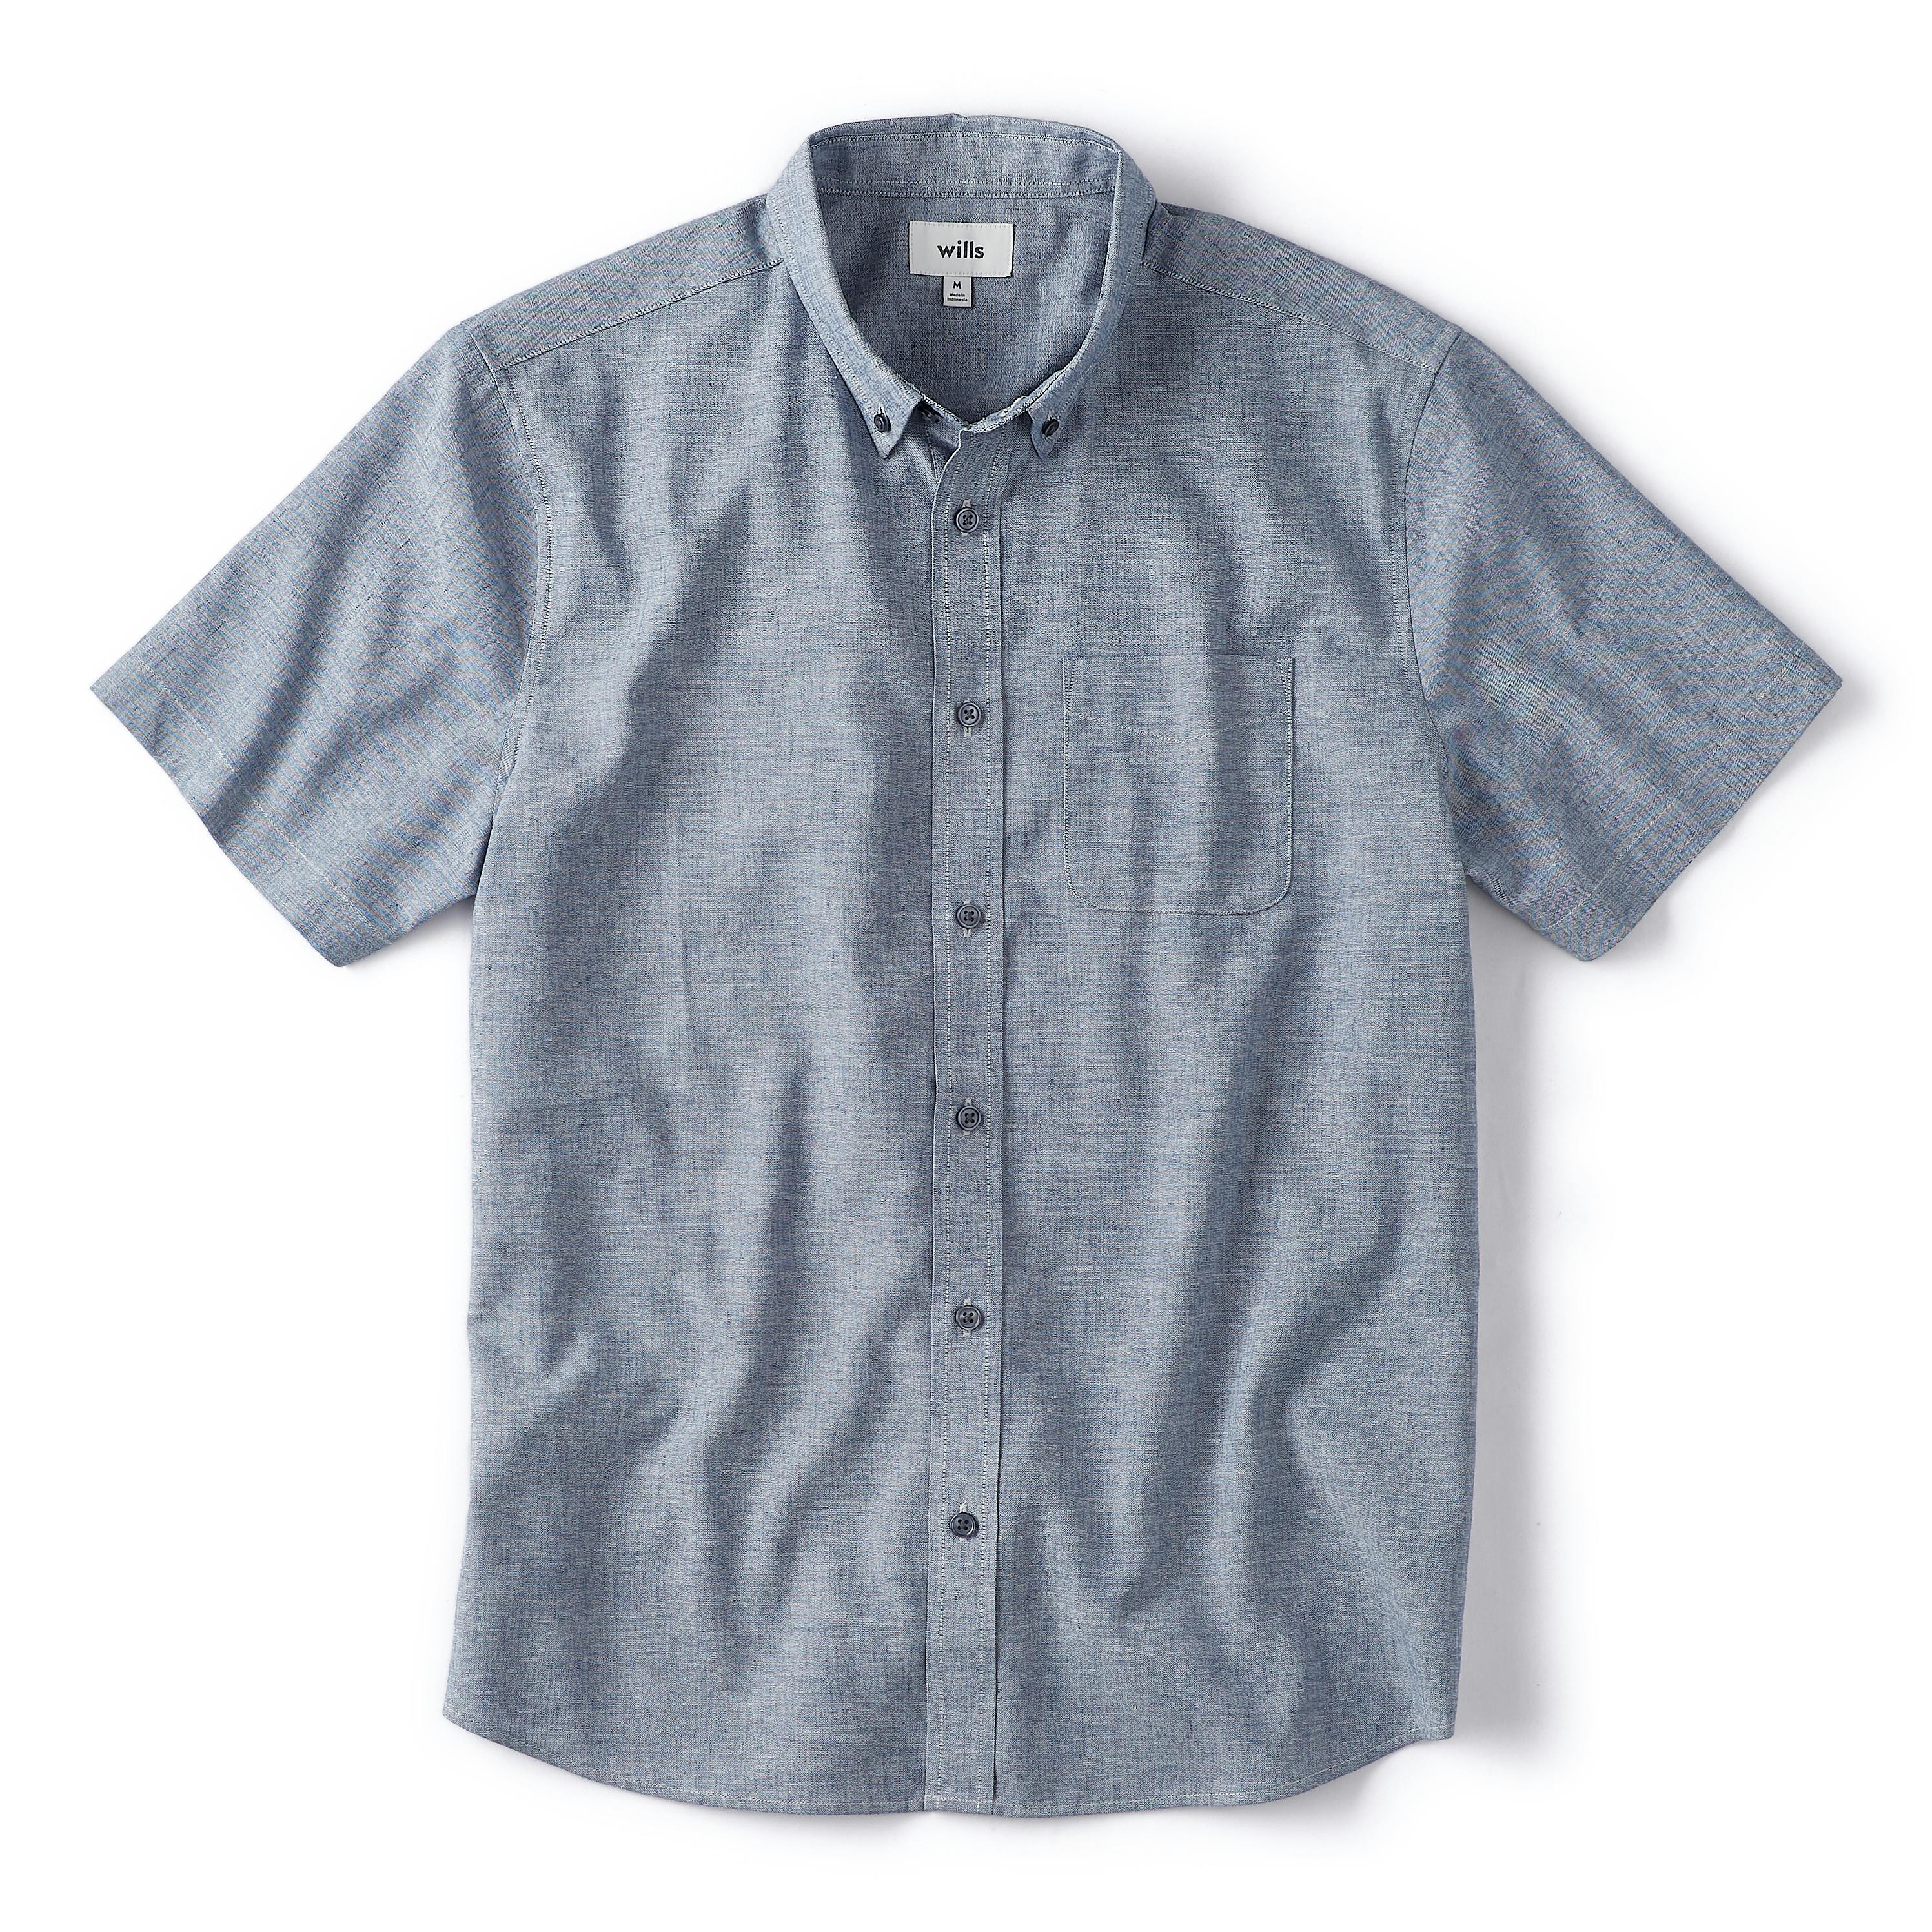 Lucky Brand Linen Short Sleeve Button-Up Shirt (Huckleberry) Men's